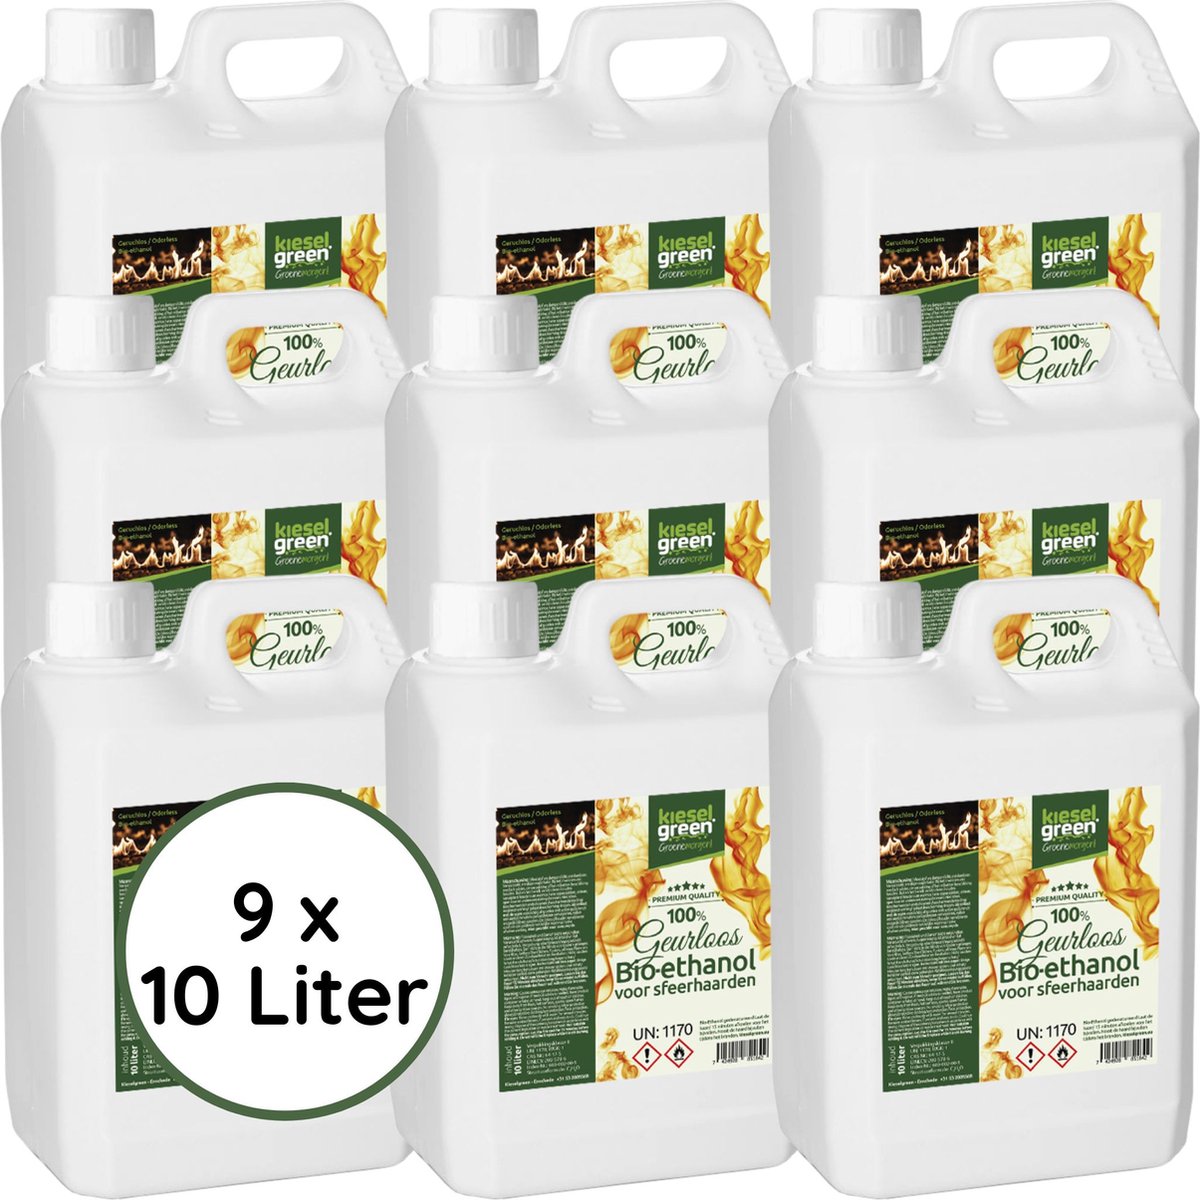 KieselGreen 90 Liter Bio-Ethanol Geurloos - Bioethanol 96.6%, Veilig voor Sfeerhaarden en Tafelhaarden, Milieuvriendelijk - Premium Kwaliteit Ethanol voor Binnen en Buiten